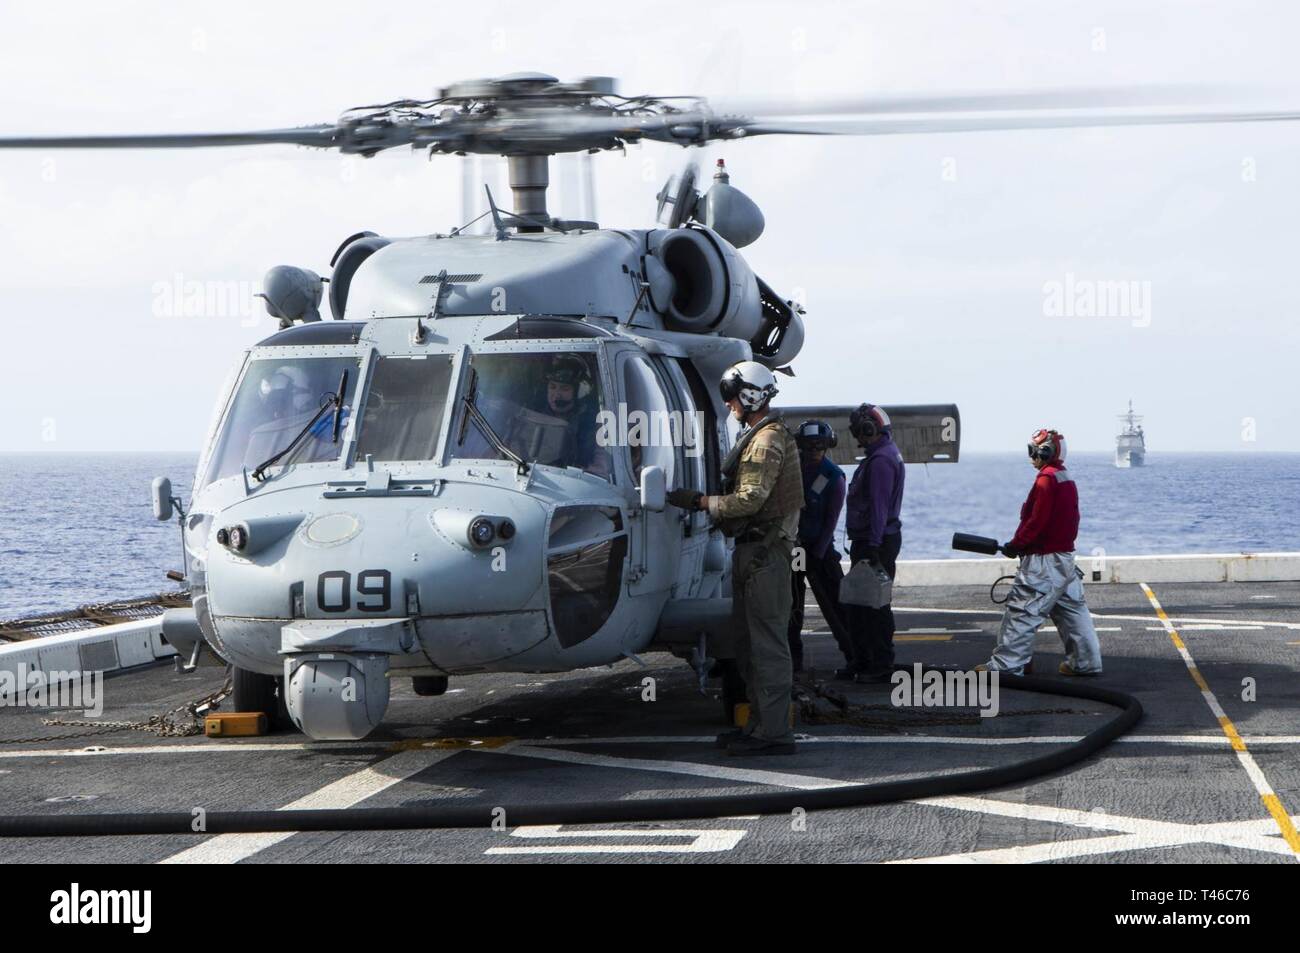 Océano Pacífico (11 de marzo, 2019) - Los marineros asignados al transporte anfibio dock buque USS Green Bay (LPD 20) combustible un SH-60 Sea Hawk helicóptero asignado a la Isla de los Caballeros de mar escuadrón de helicópteros de combate (HSC) 25 en la cubierta de vuelo durante un ejercicio de entrenamiento con otros buques de guerra de la Marina de los EE.UU. Los buques de guerra de la Marina de EE.UU. entrenan juntos para aumentar la habilidad táctica, la letalidad y la interoperabilidad de las unidades participantes en una época de gran potencia para la competencia. Foto de stock